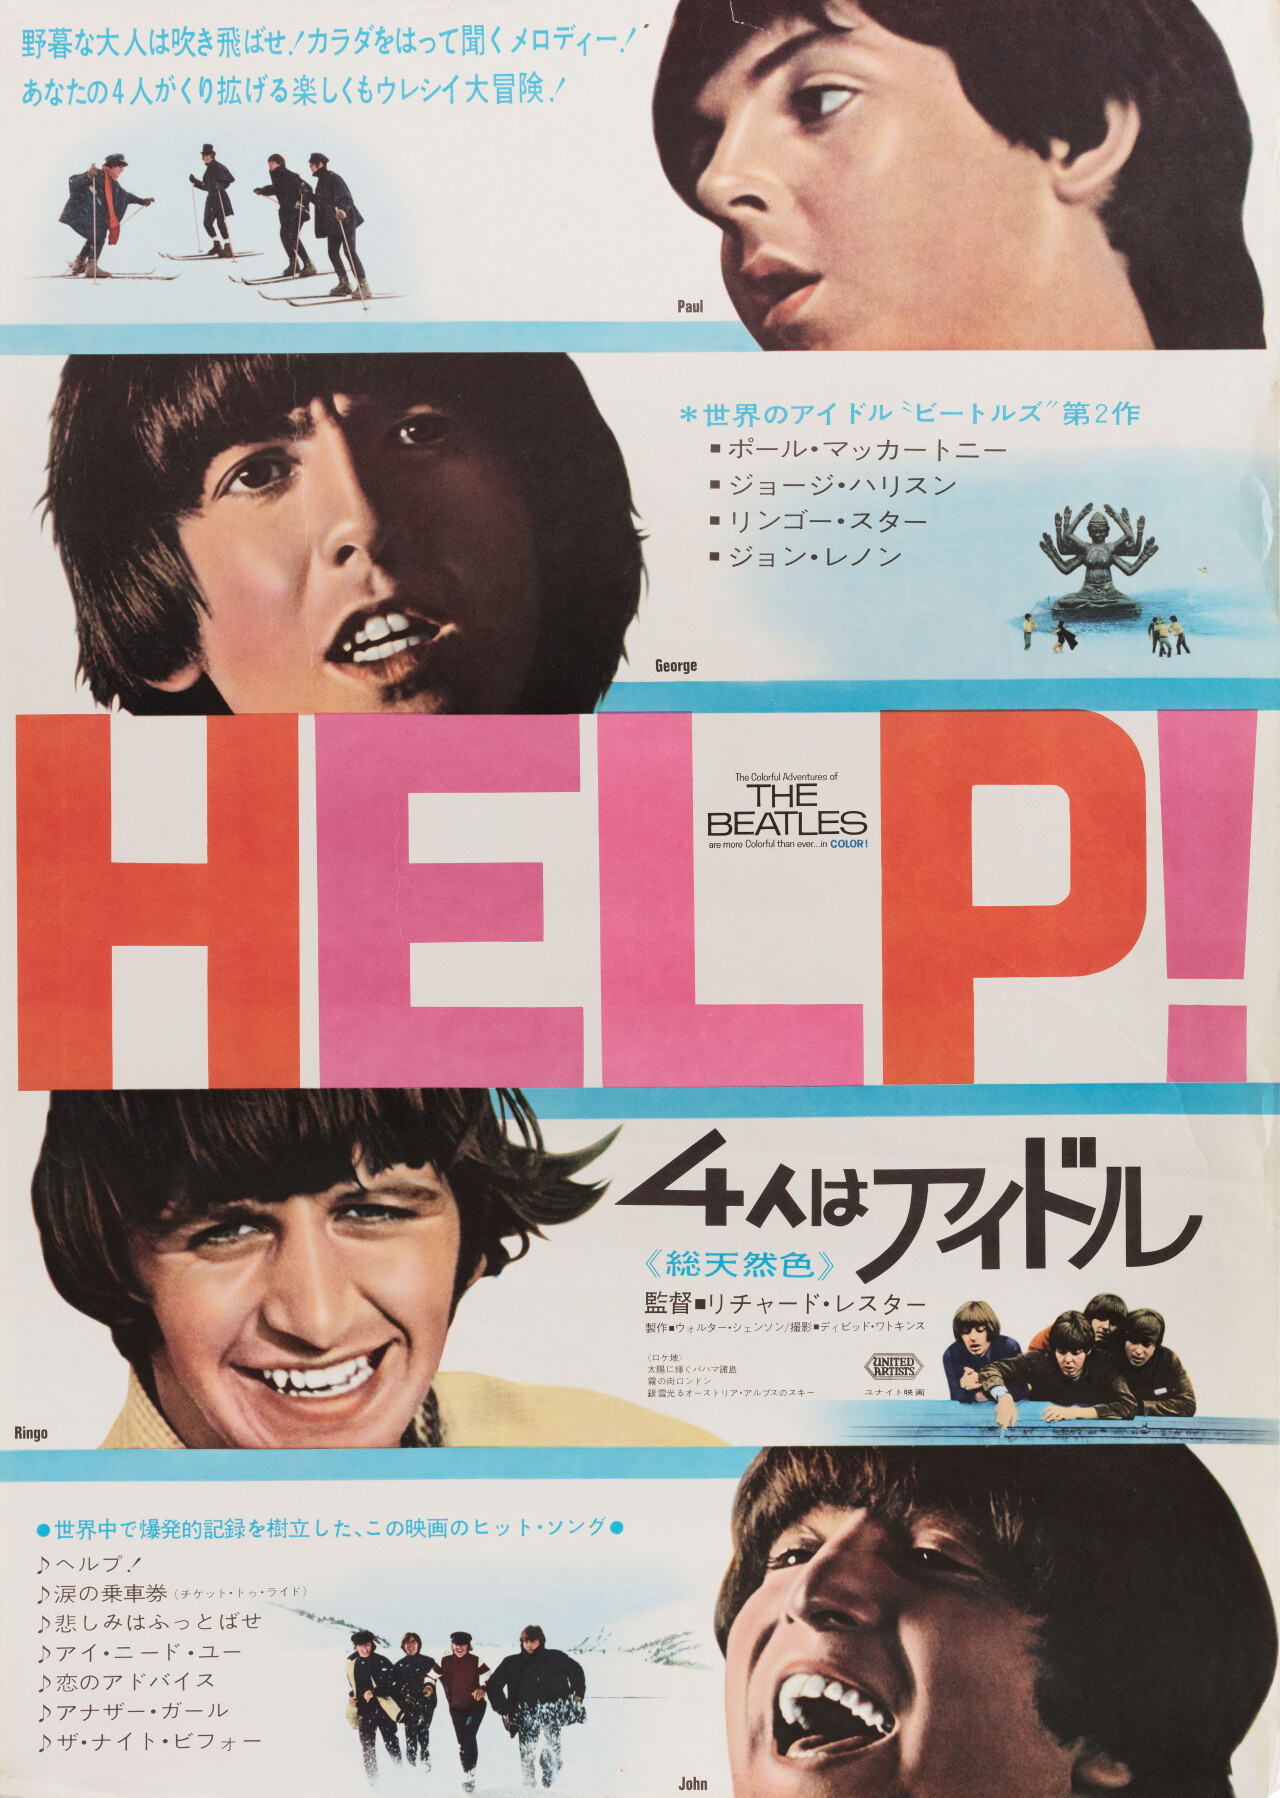 На помощь! (Help!, 1965), режиссёр Ричард Лестер, японский постер к фильму (графический дизайн, 1965 год)